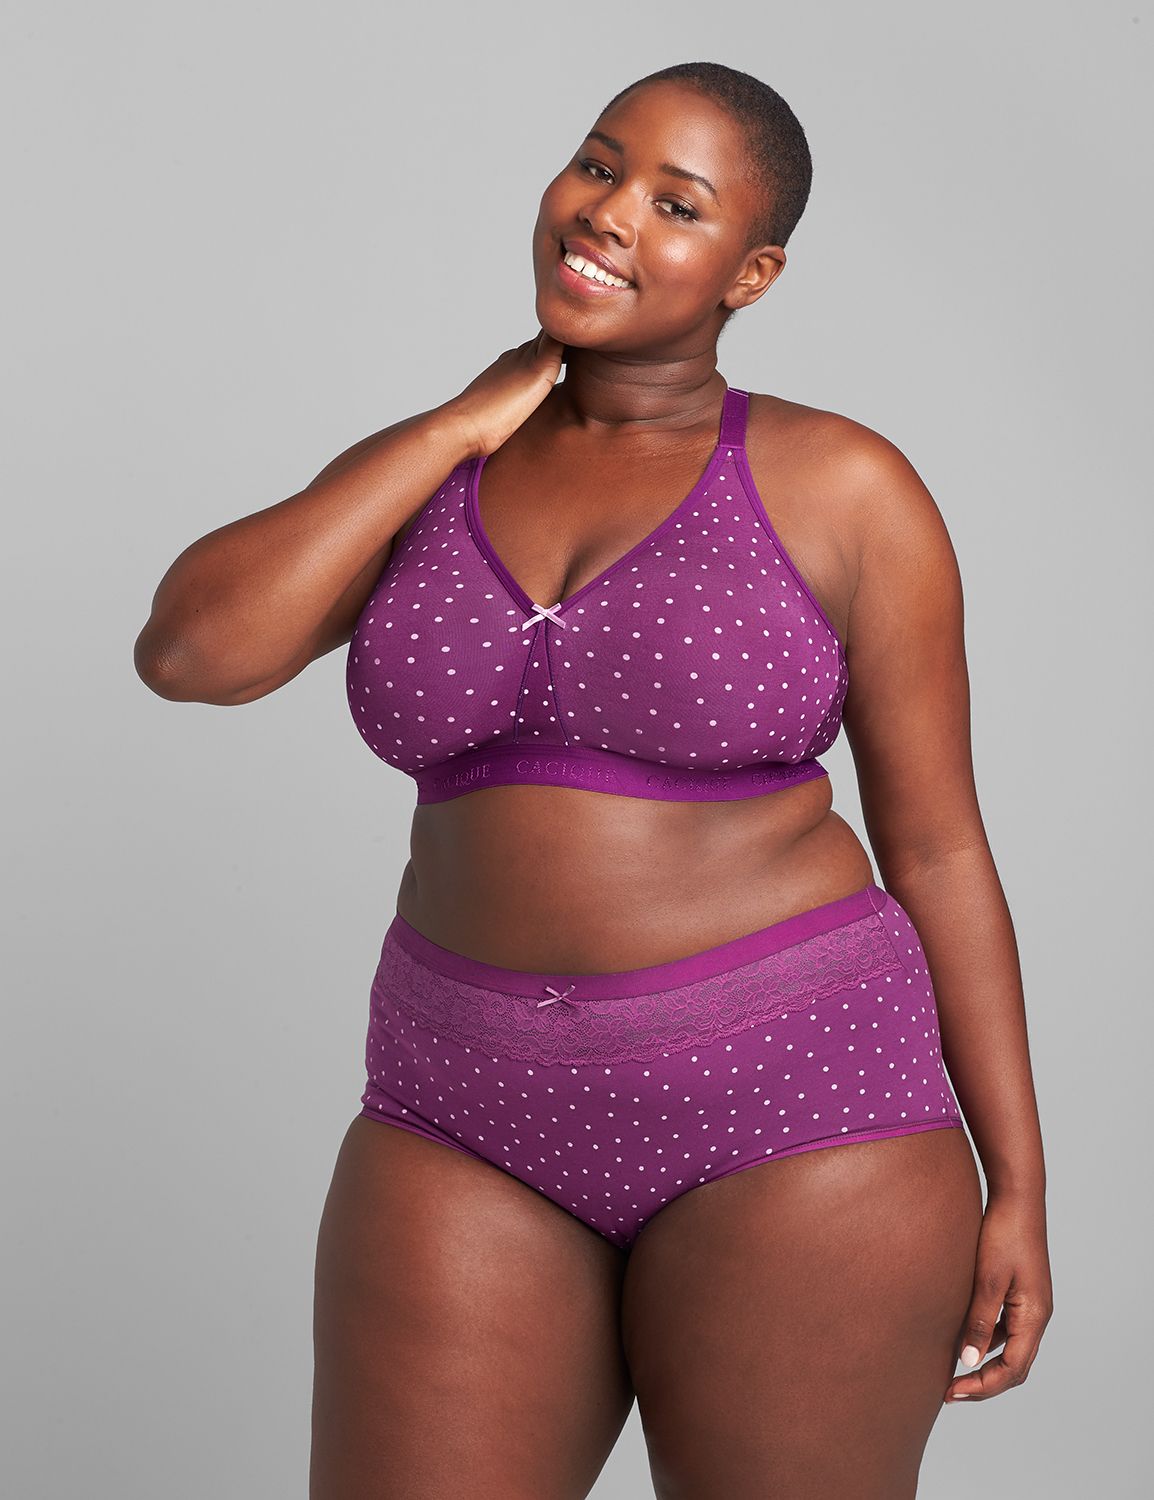 38d purple bra, Women's Fashion, New Undergarments & Loungewear on Carousell